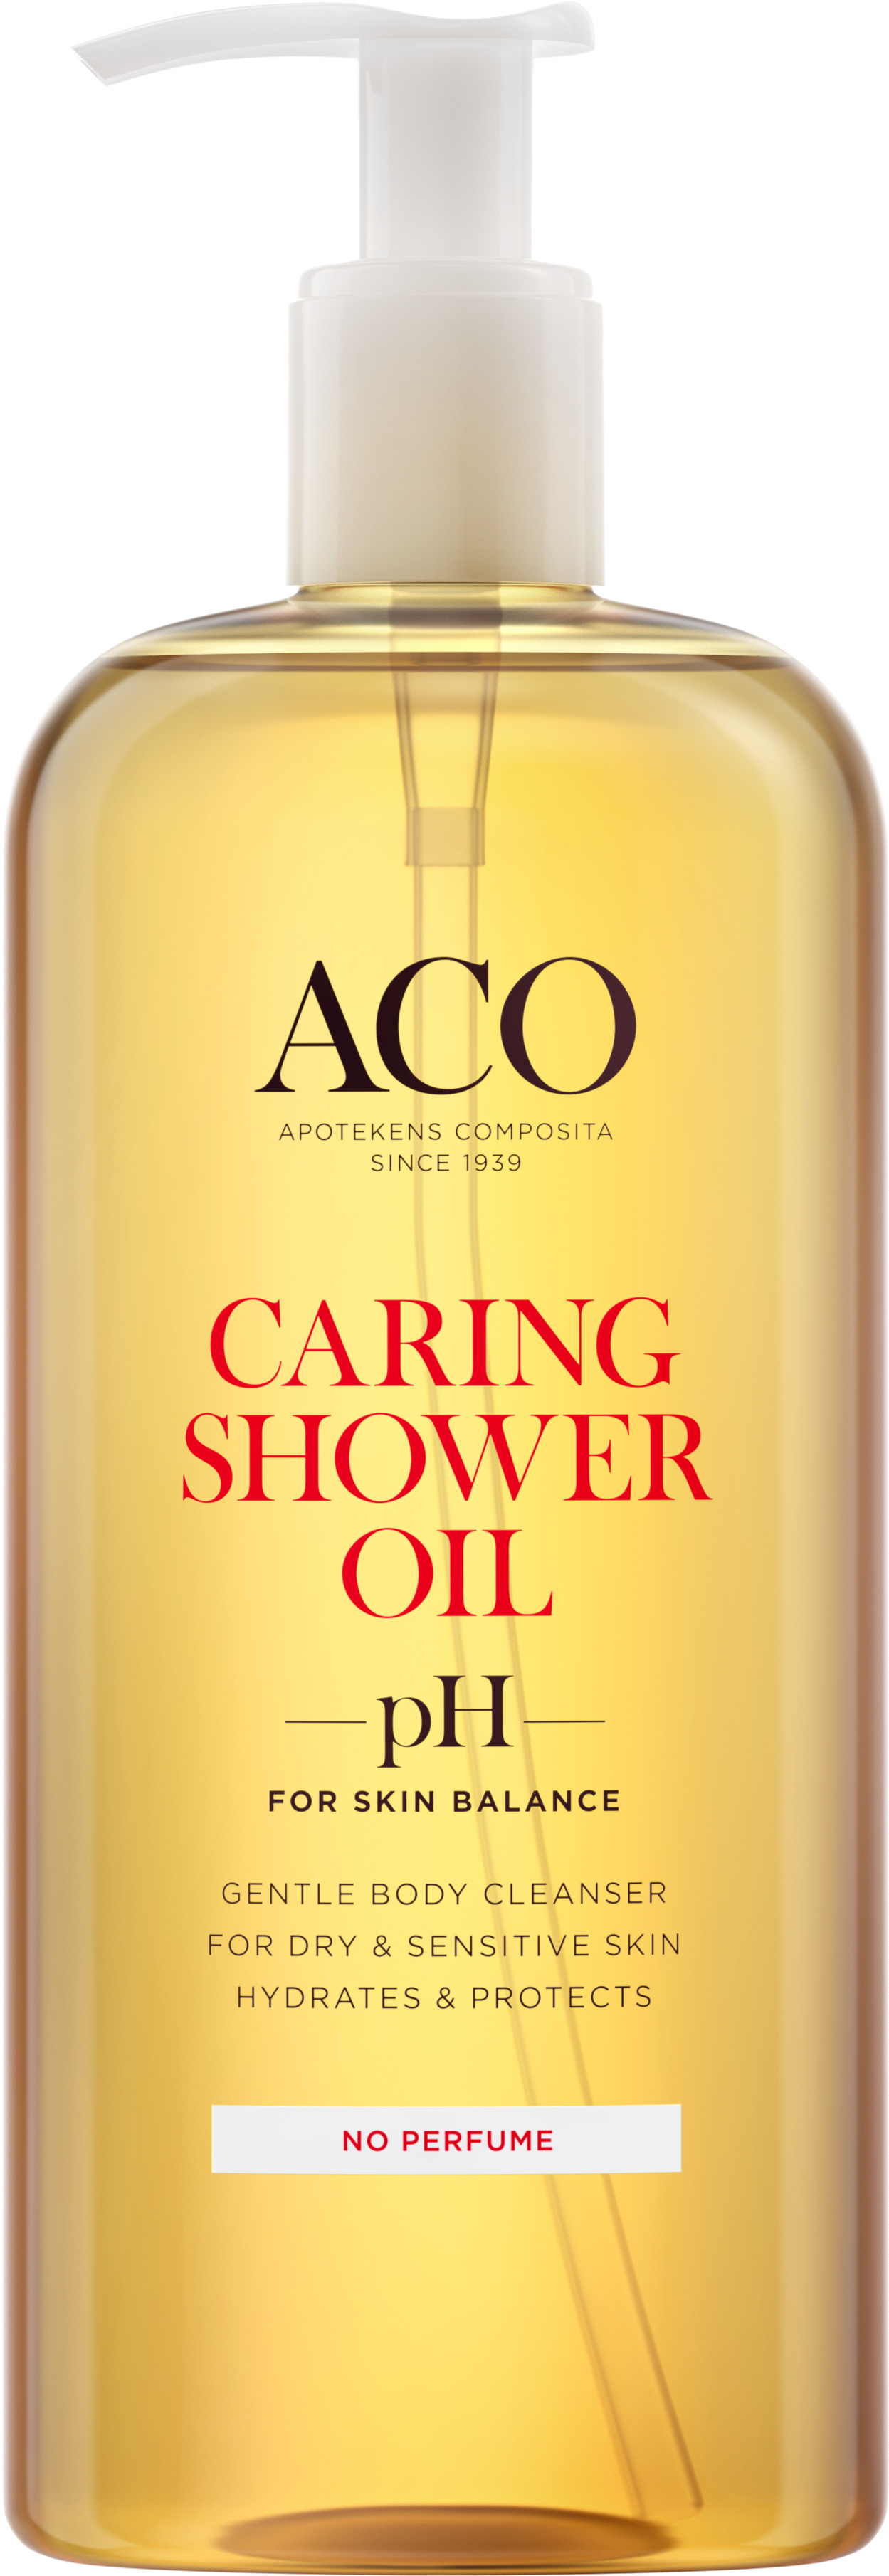 ACO Body Caring Shower Oil Duscholja Oparfymerad 400 ml